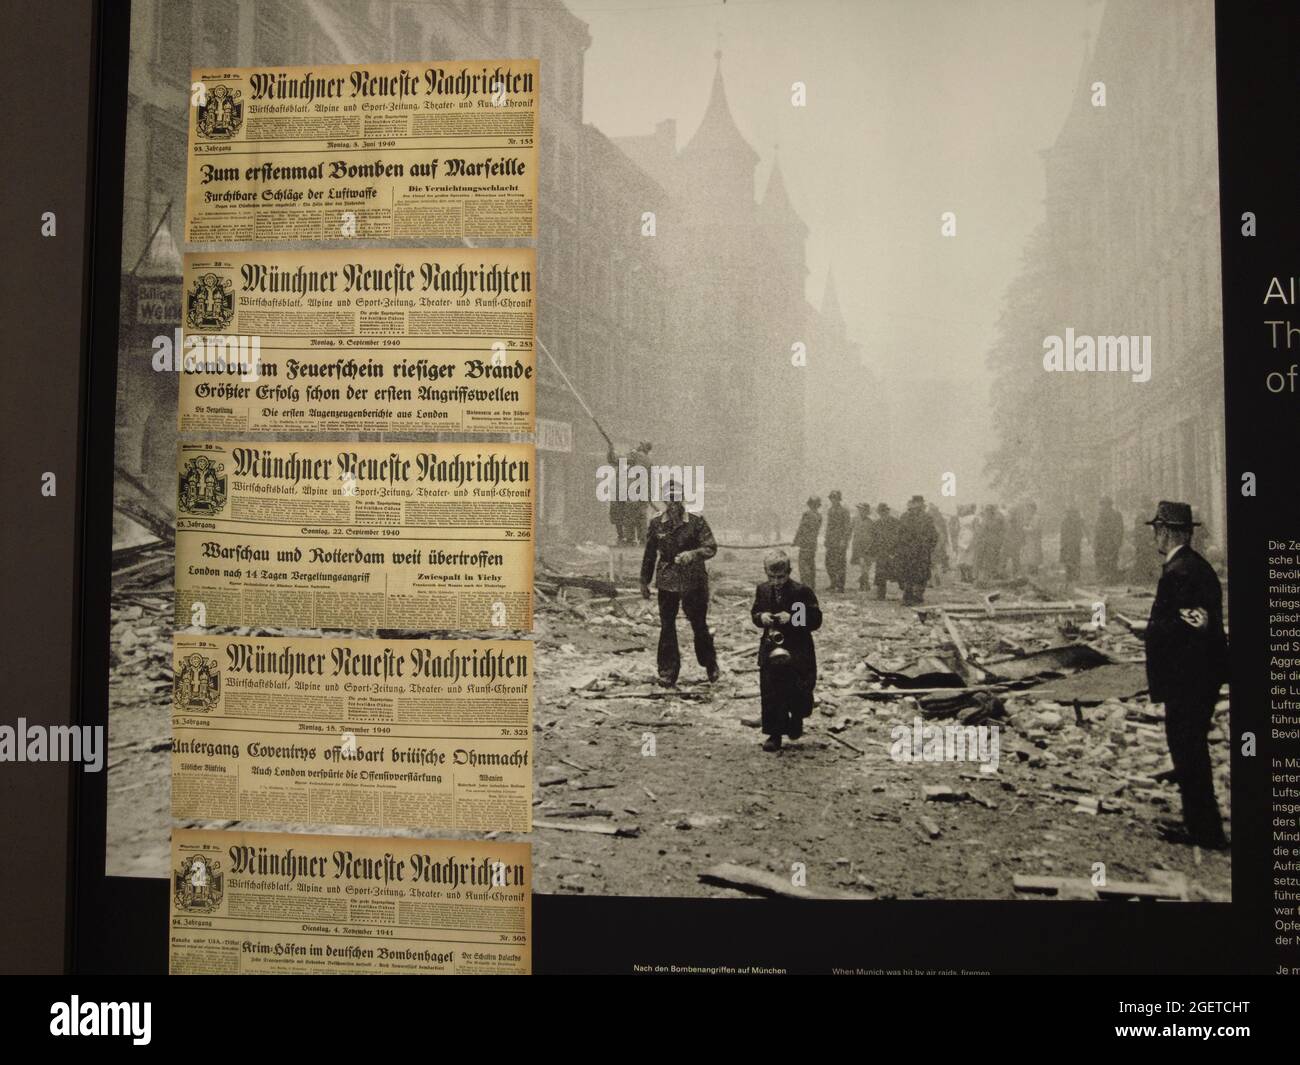 Old Spiegel Stern Riviste, storia di copertina Olocausto in periodo nazista Foto Stock